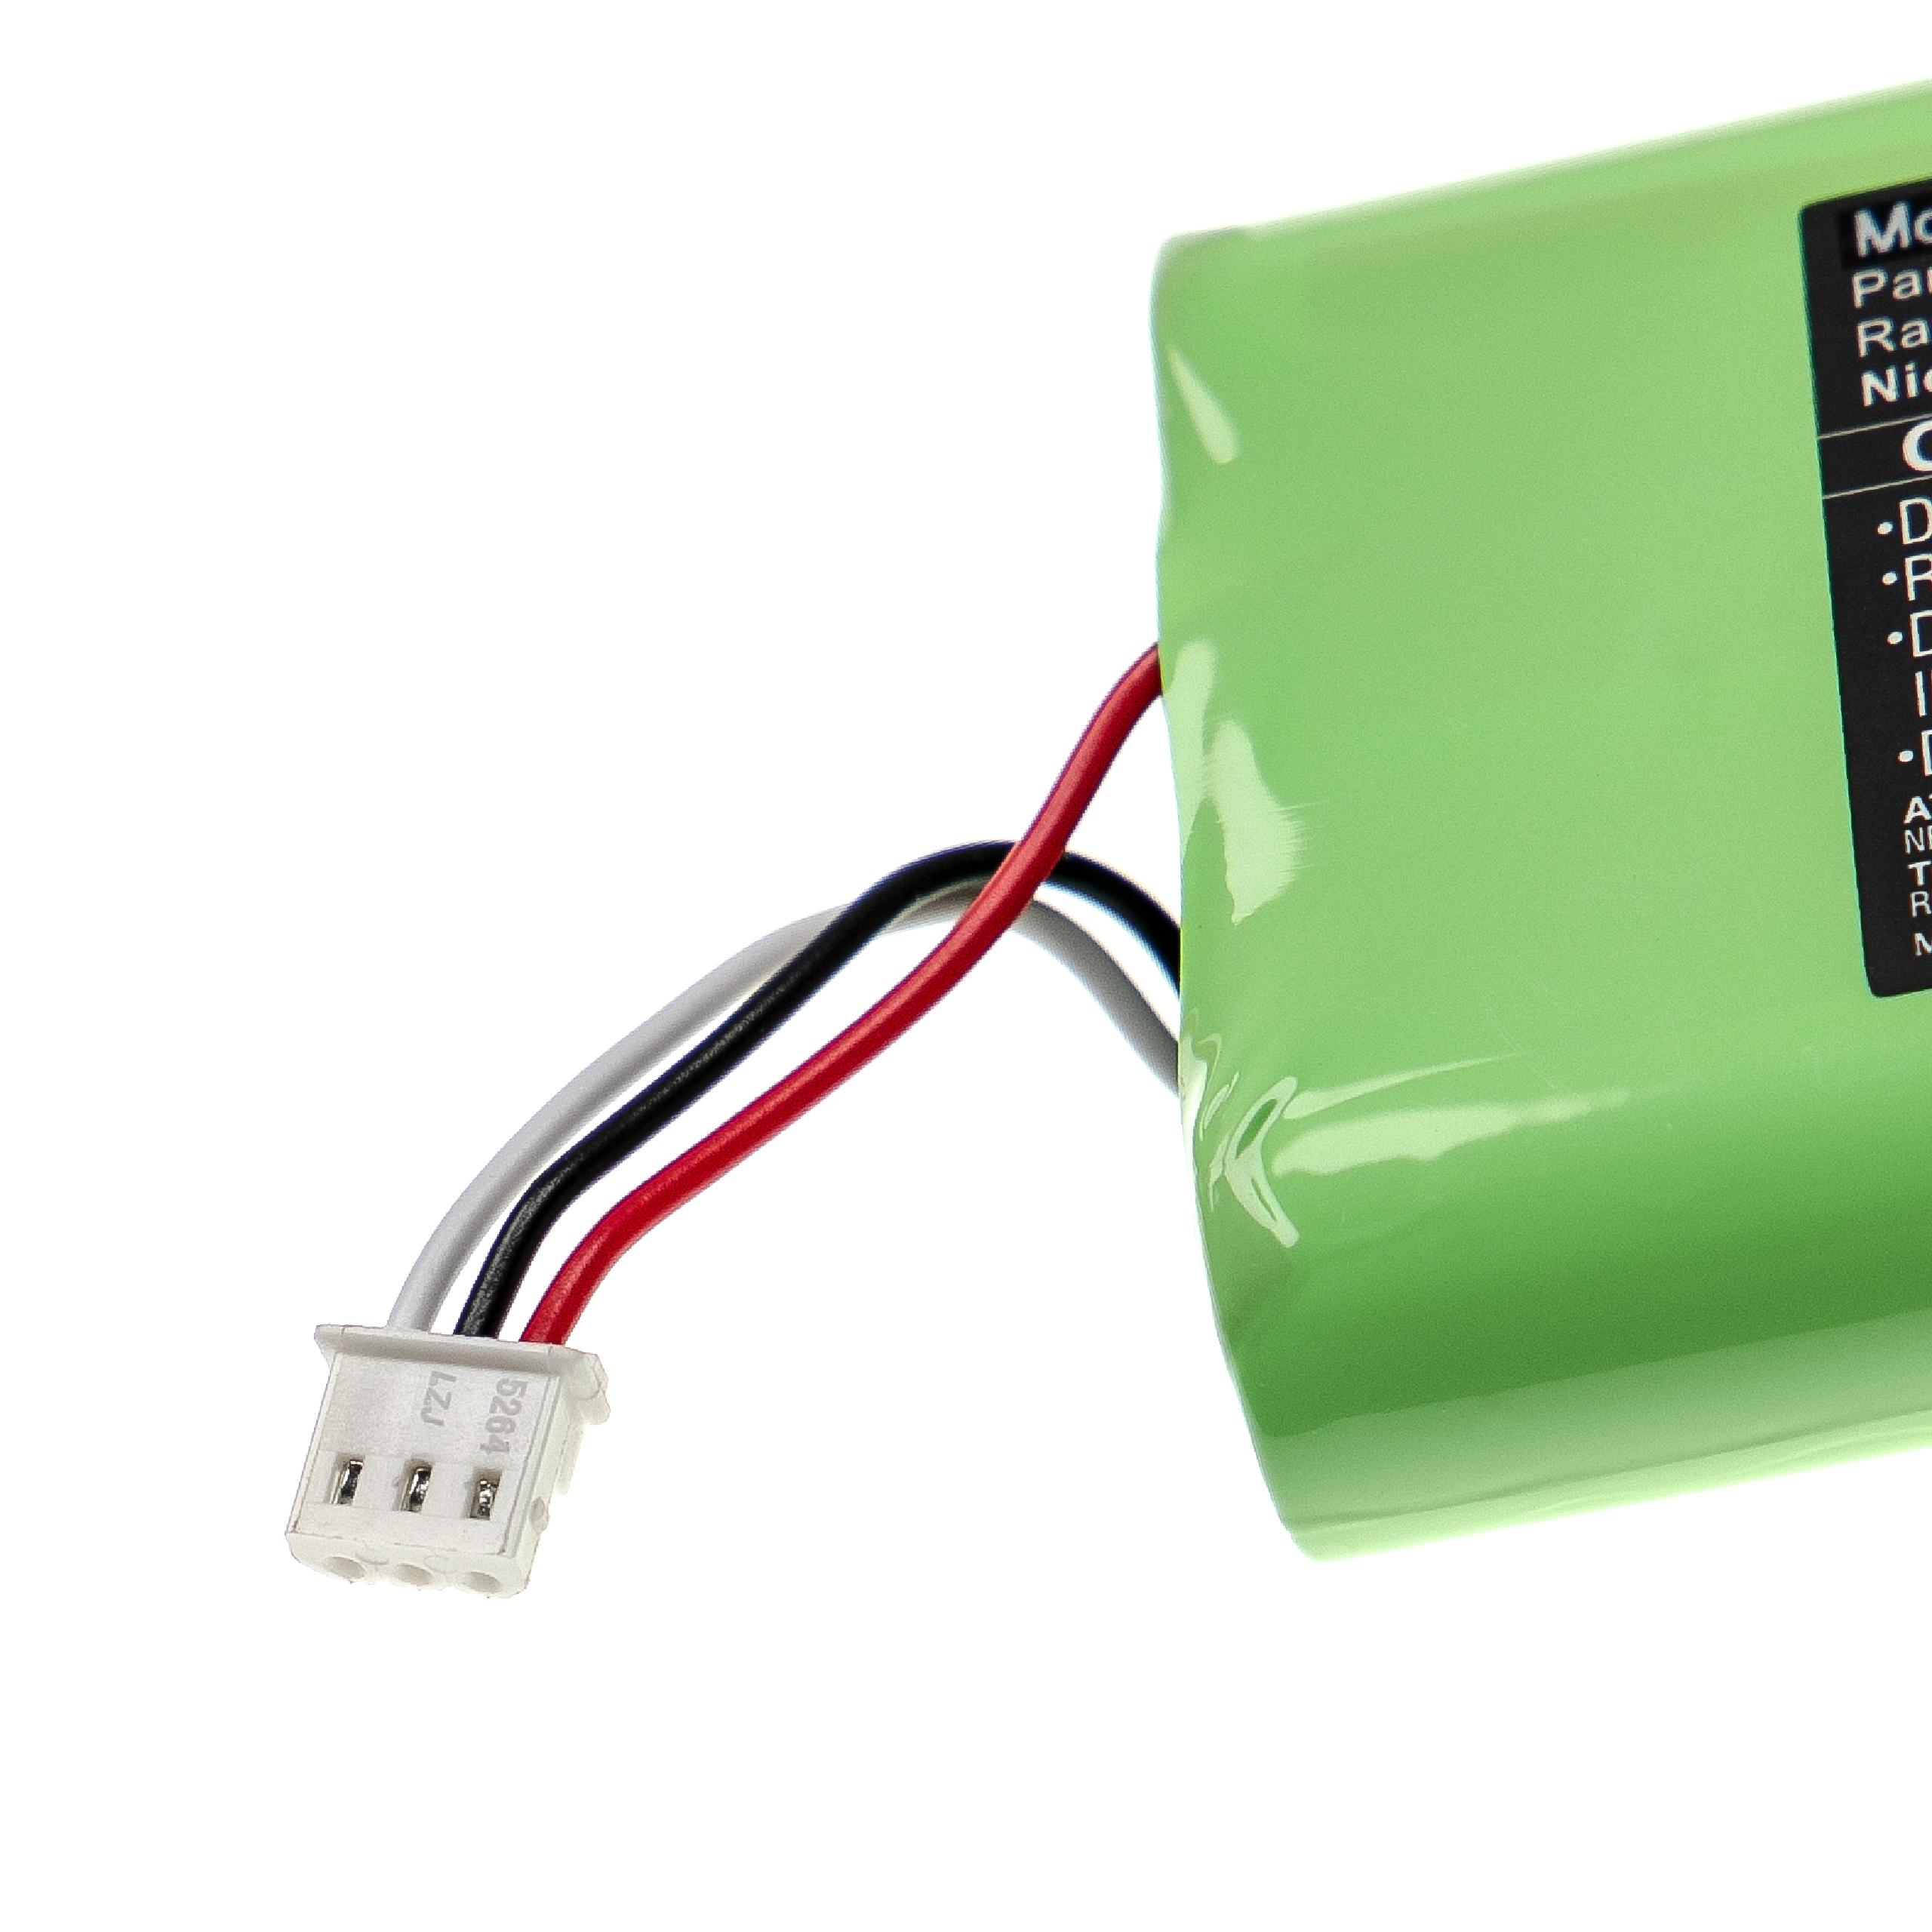 Batterie remplace Keysight U1571A, 3006672610 pour outil de mesure - 4500mAh 7,2V NiMH